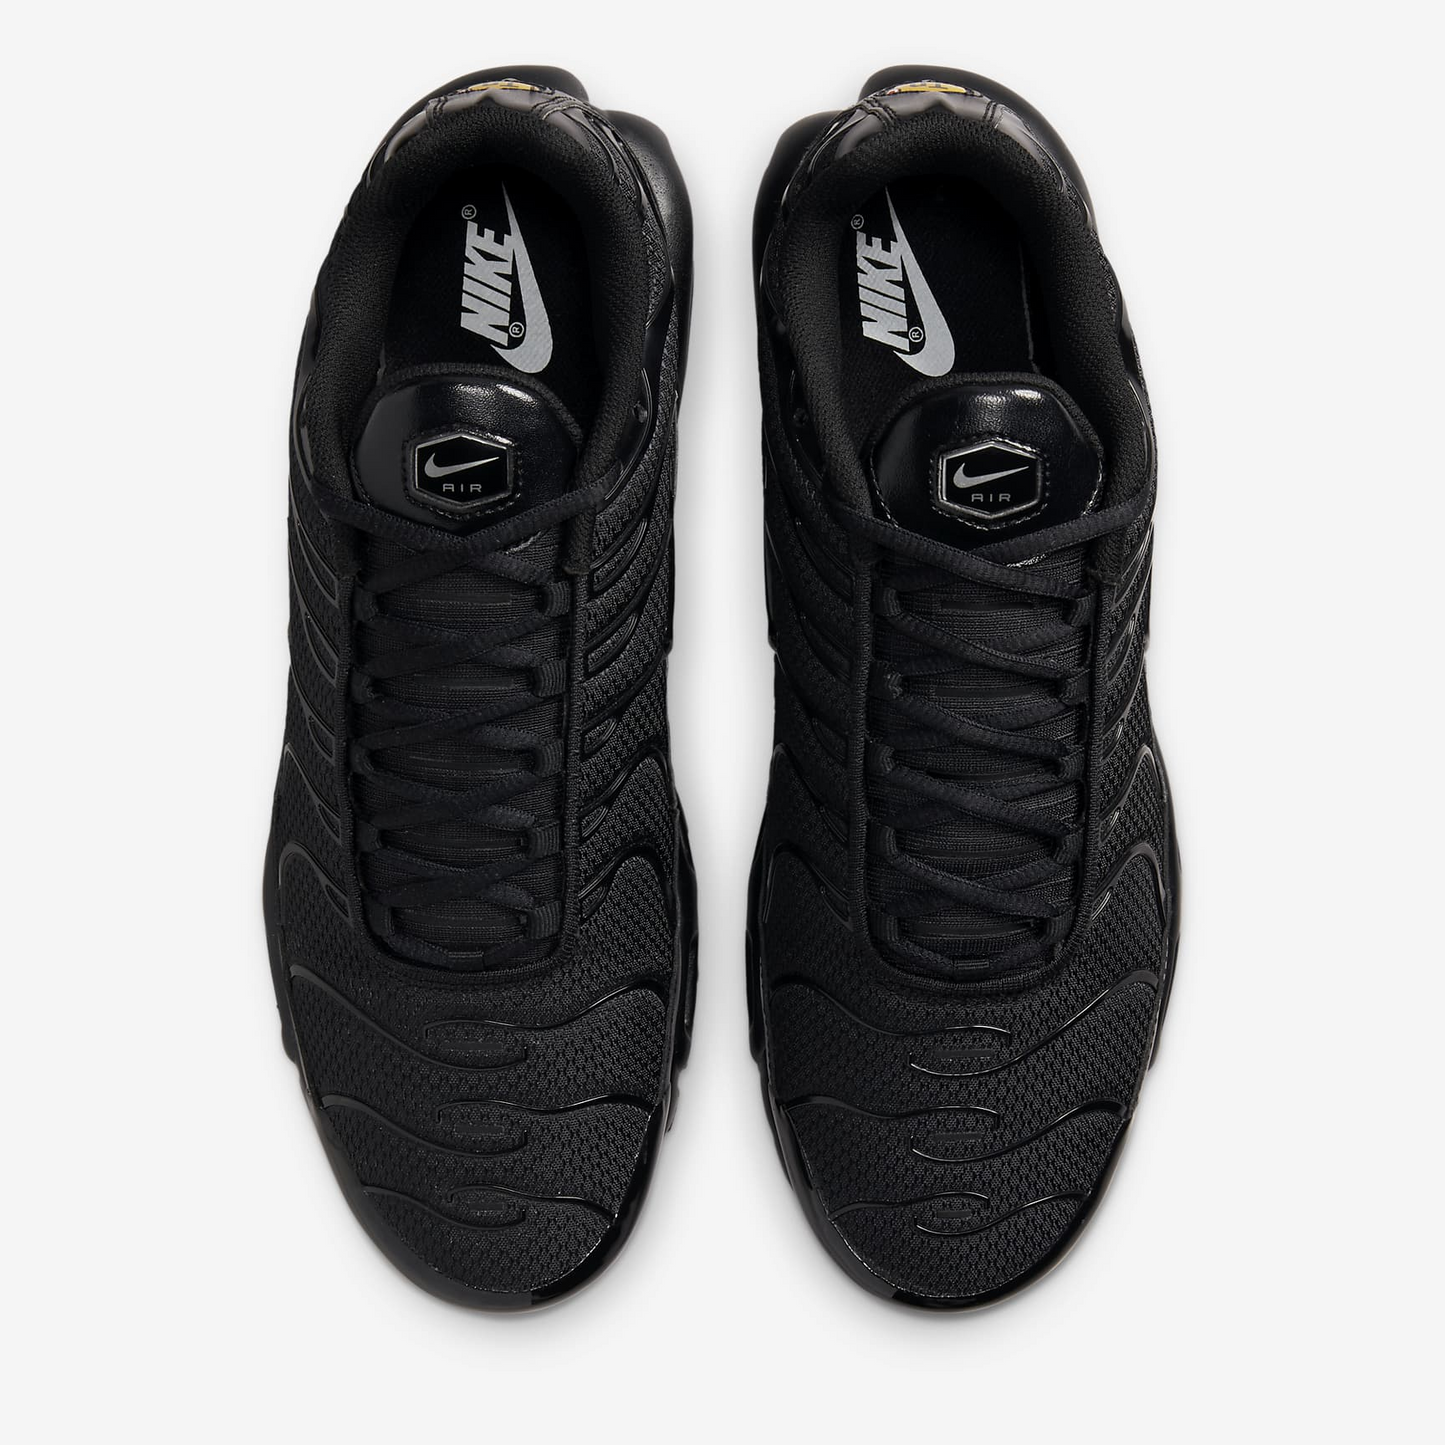 Air Max Plus Sneakers - Black